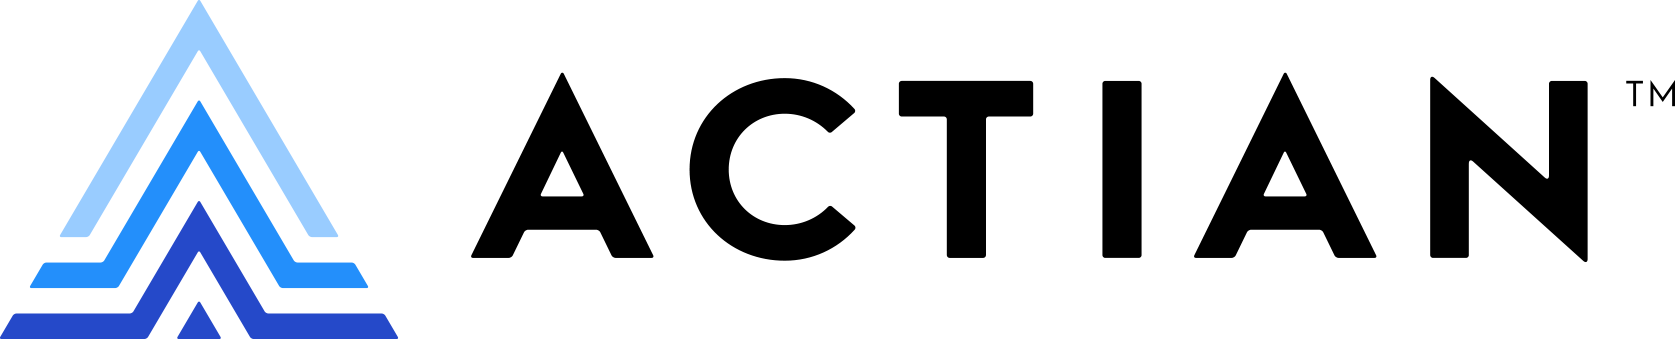 Logo Actian tools